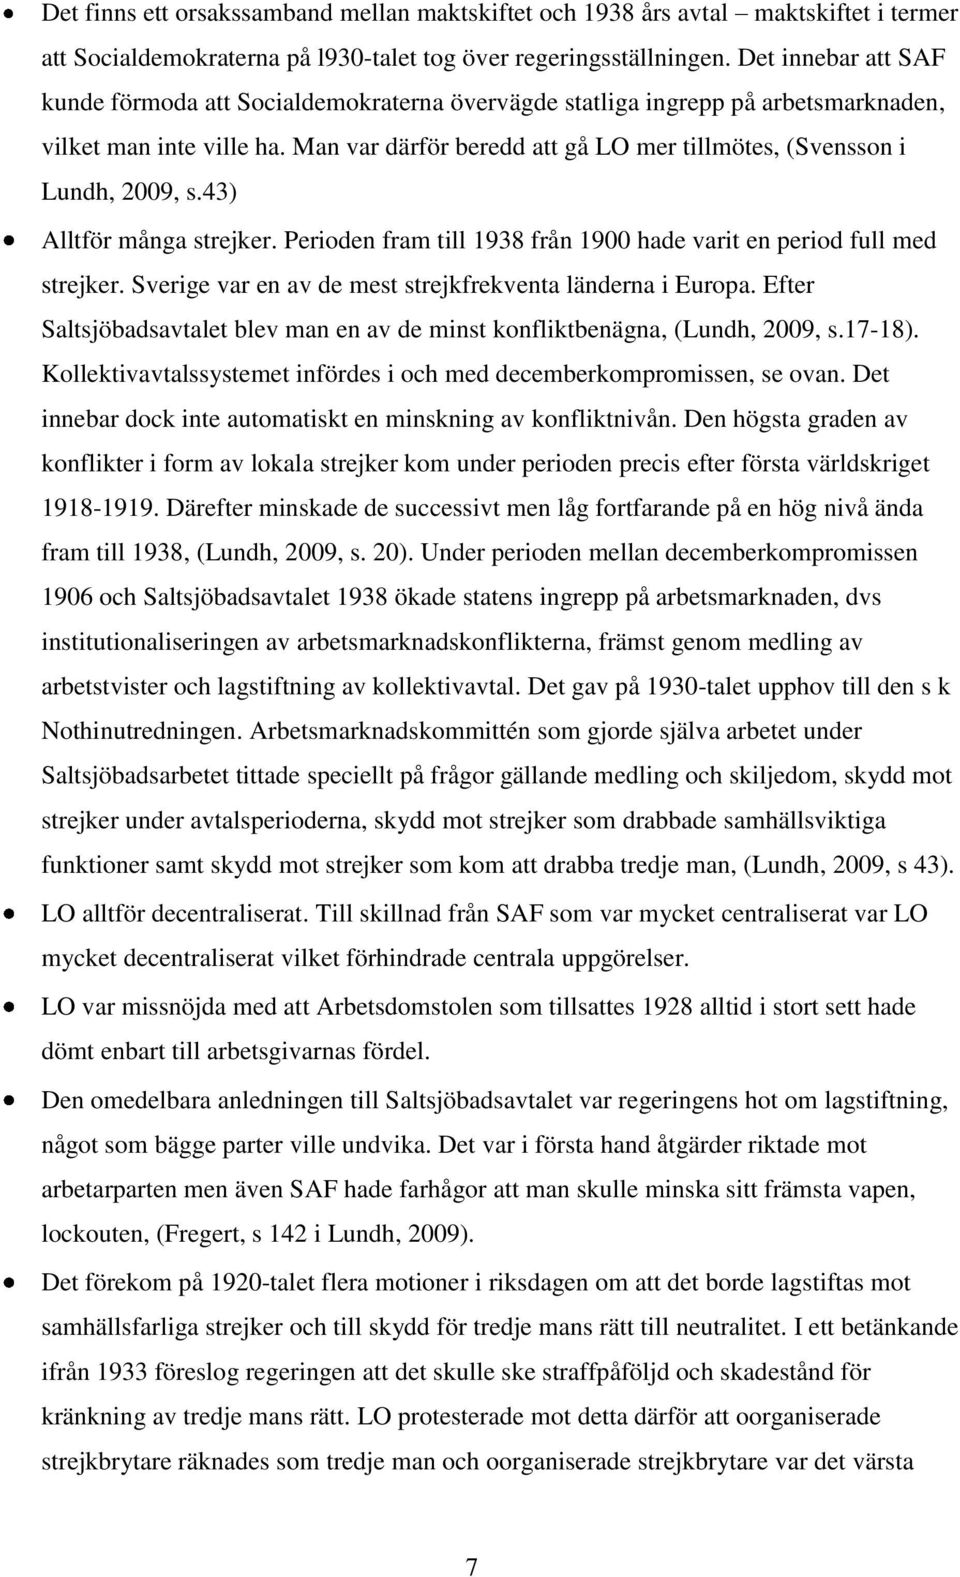 Man var därför beredd att gå LO mer tillmötes, (Svensson i Lundh, 2009, s.43) Alltför många strejker. Perioden fram till 1938 från 1900 hade varit en period full med strejker.